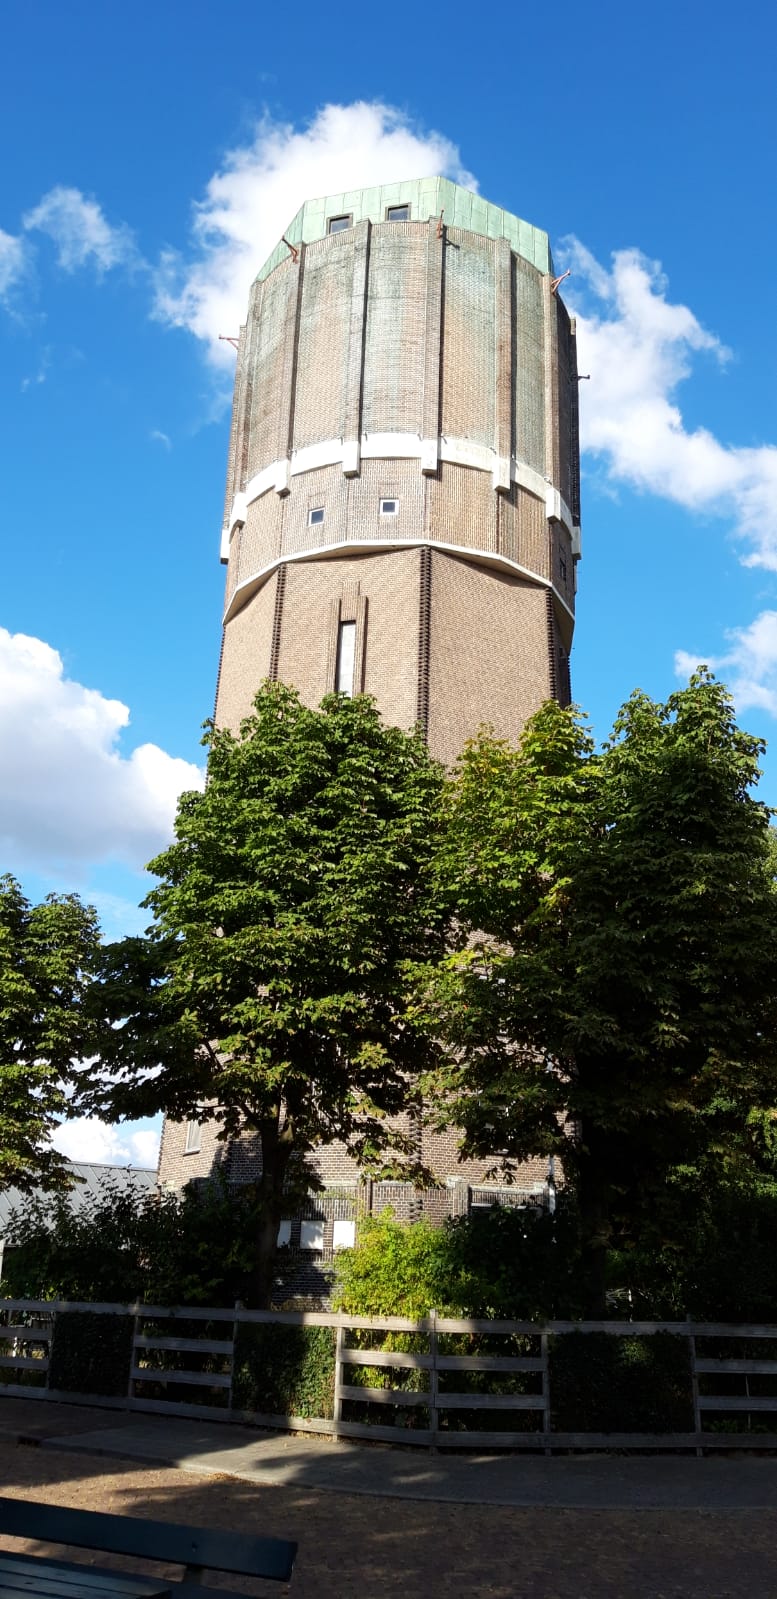 De oude watertoren in Winterswijk rookt niet, het is een onschuldig wolkje! (Foto: Vriendin van _UserName_)